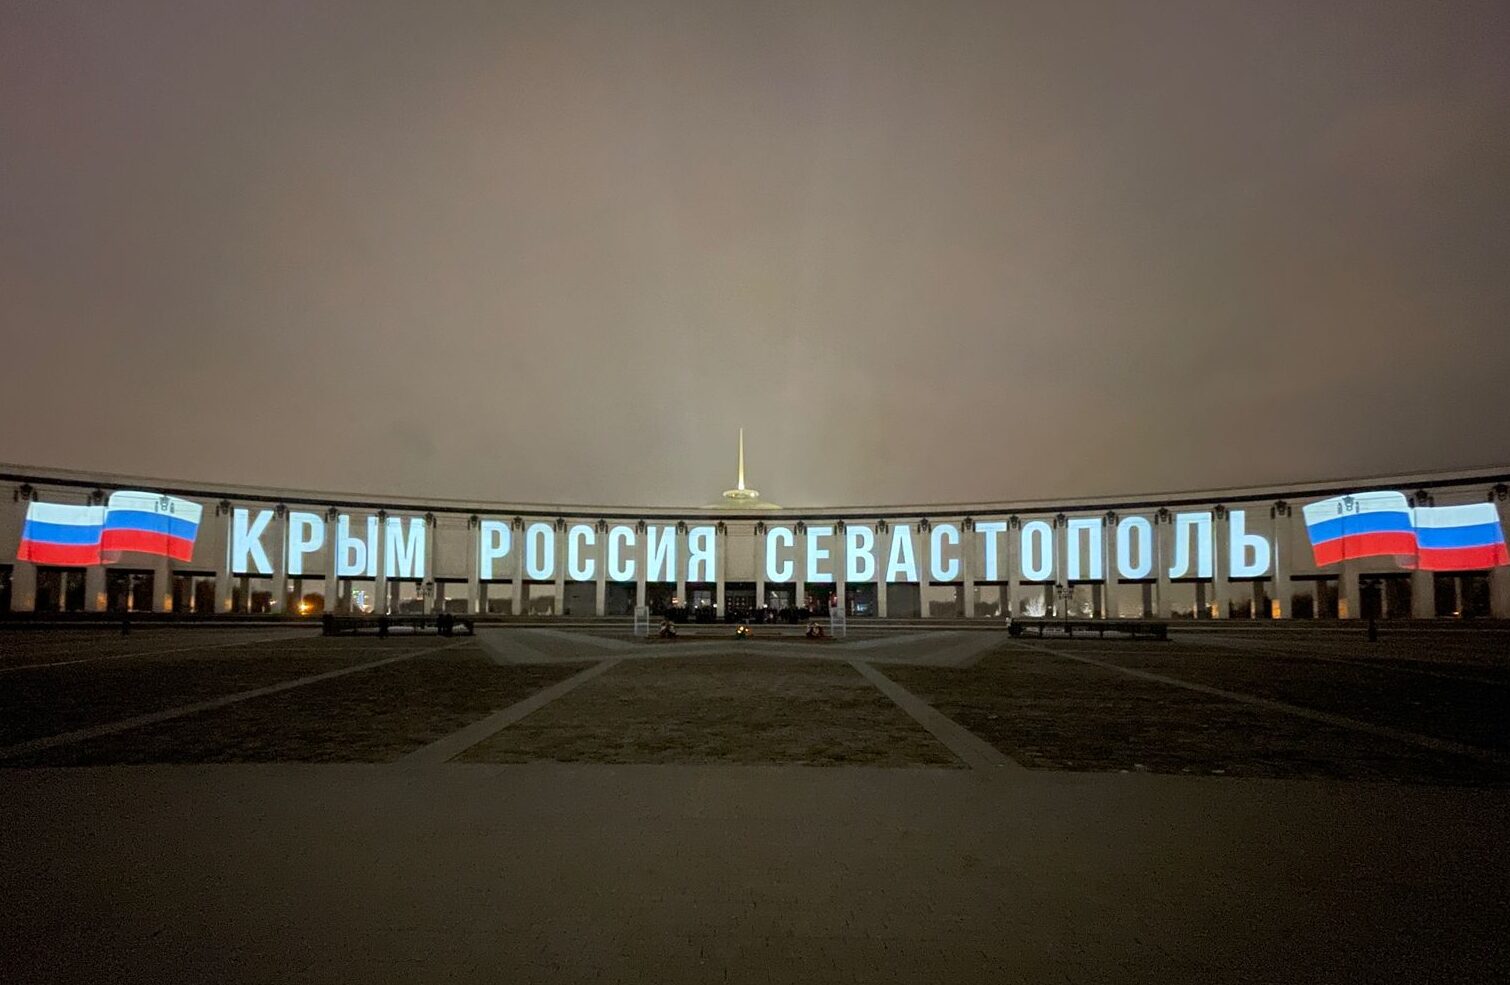 Музей присоединился к празднованию юбилея воссоединения Крыма и Севастополя с Россией 